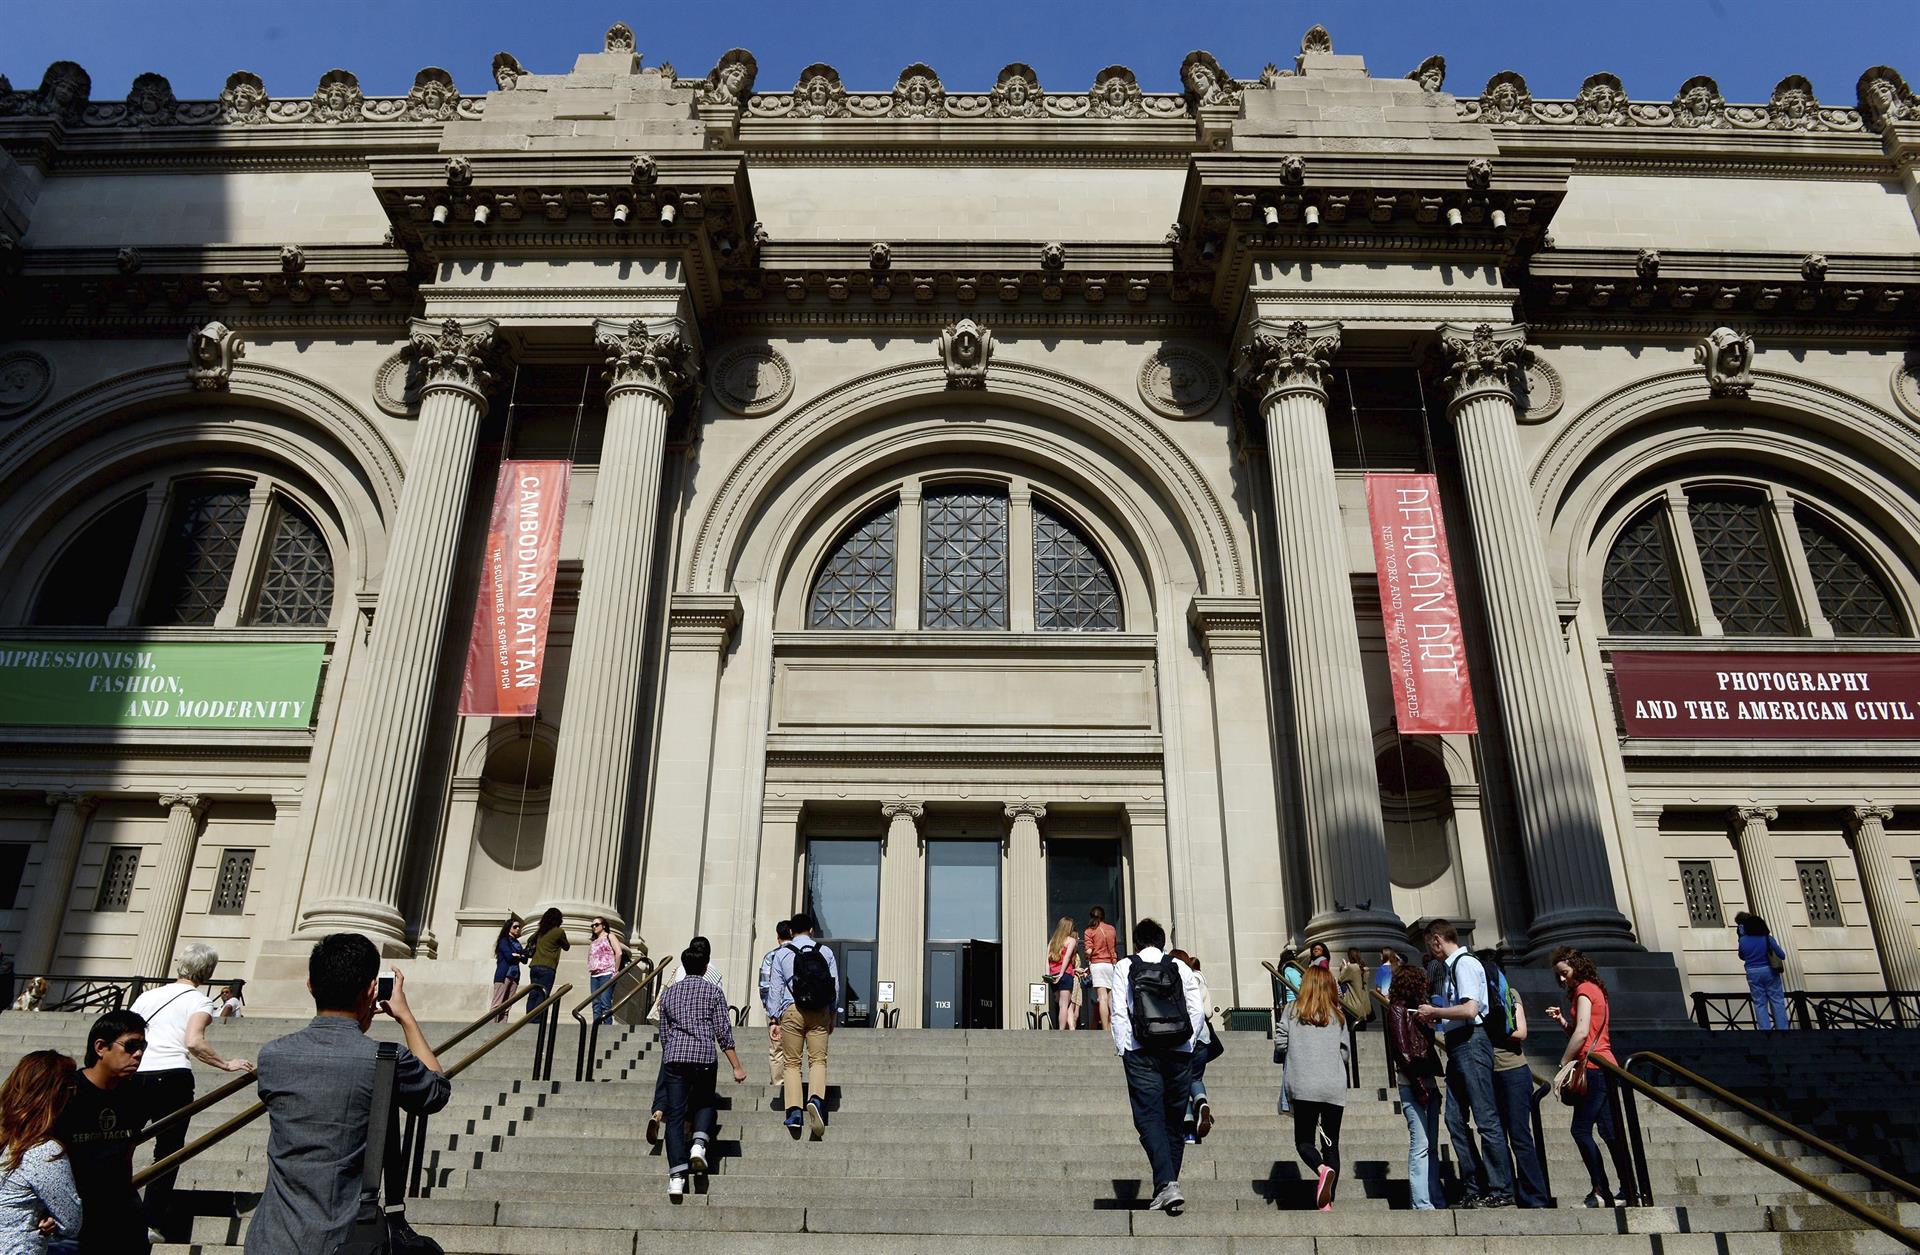 Vista de la entrada del Museo Metropolitano de Arte (MET) de Nueva York, EEUU. Imagen de archivo. EFE/Justin Lane
